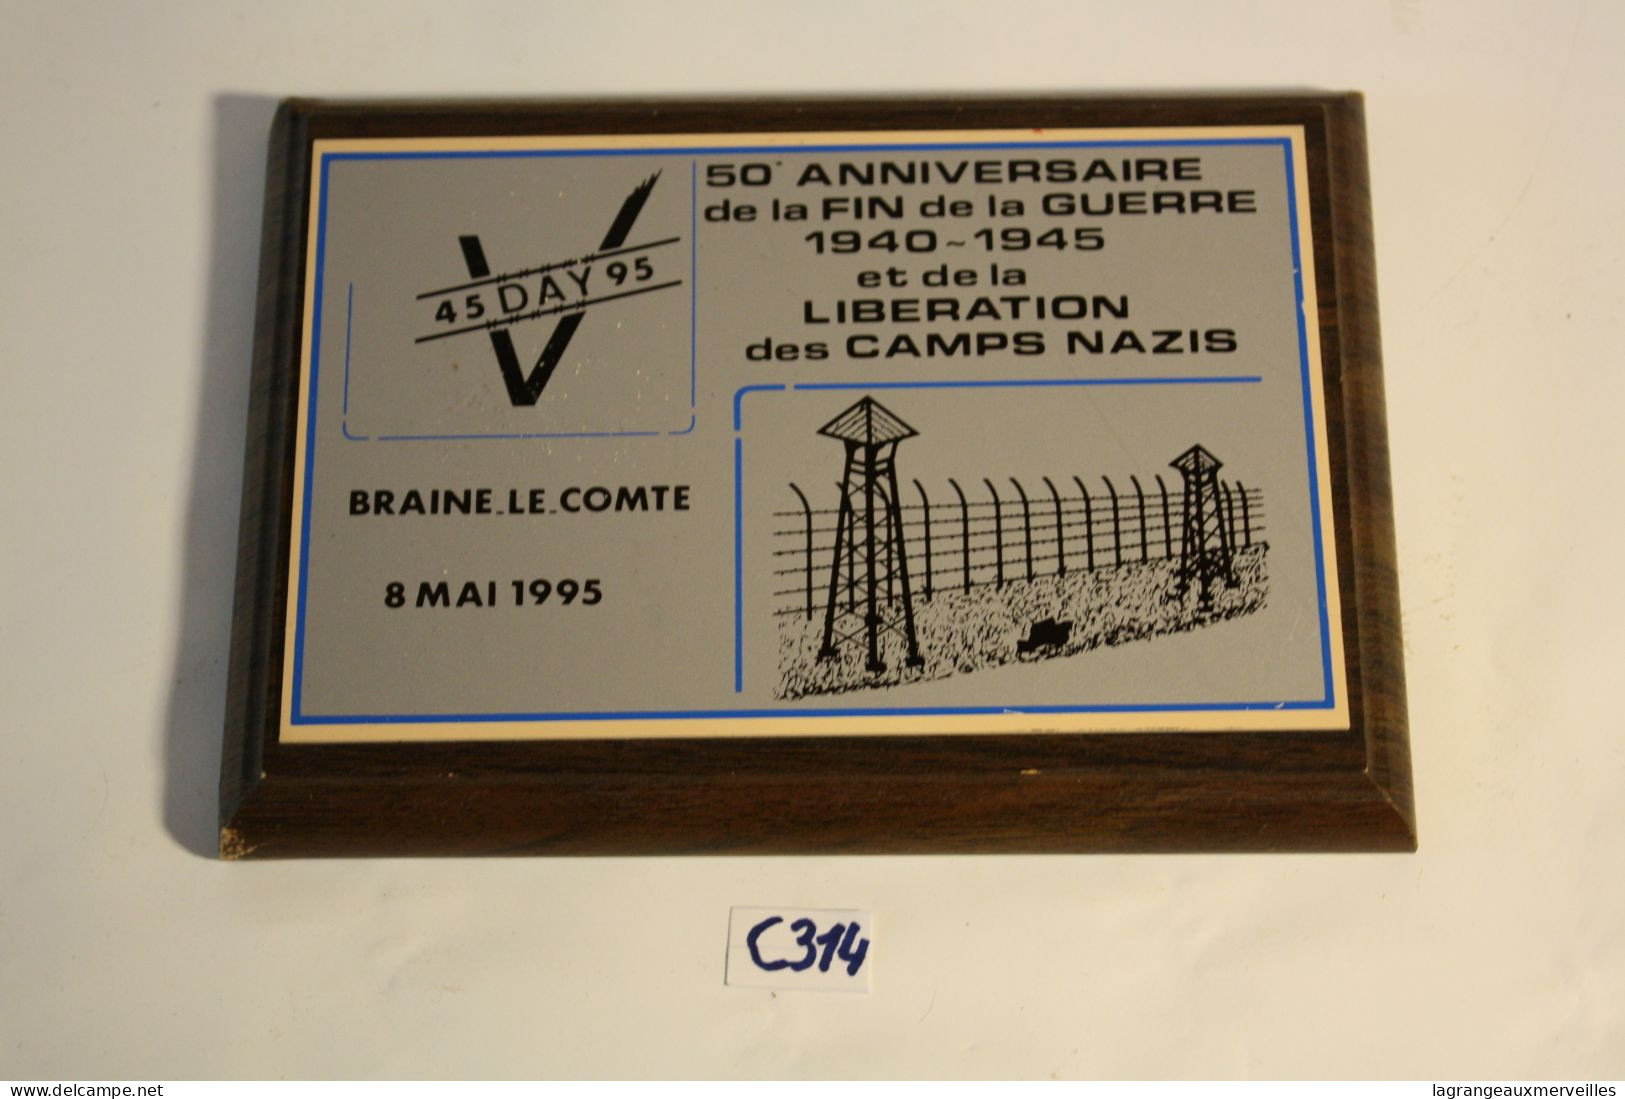 C314 Souvenir Braine Le Comte - 50 ème Anniversaire - Libération Des Camps Nazis 1995 - Obj. 'Remember Of'